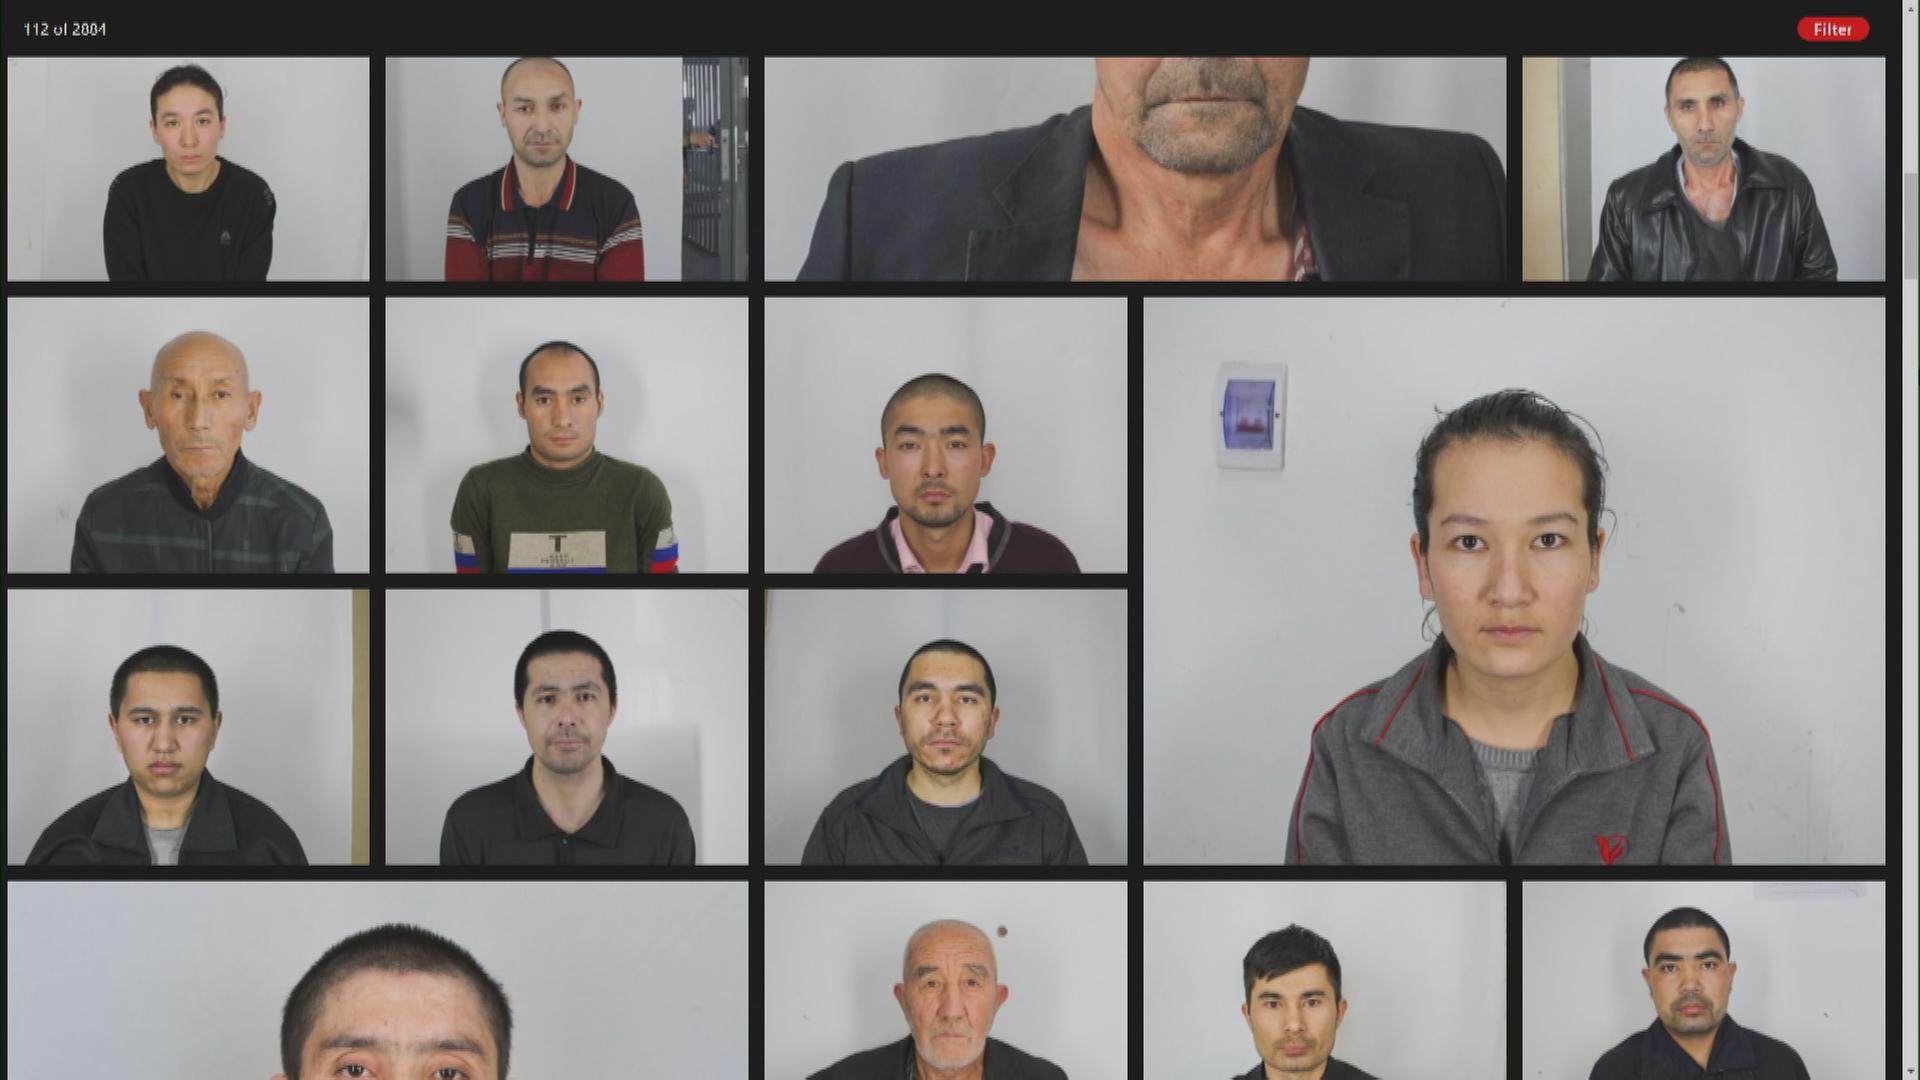 Bilder von internierten Uiguren und Minderheiten in China, Xinjiang Police Files